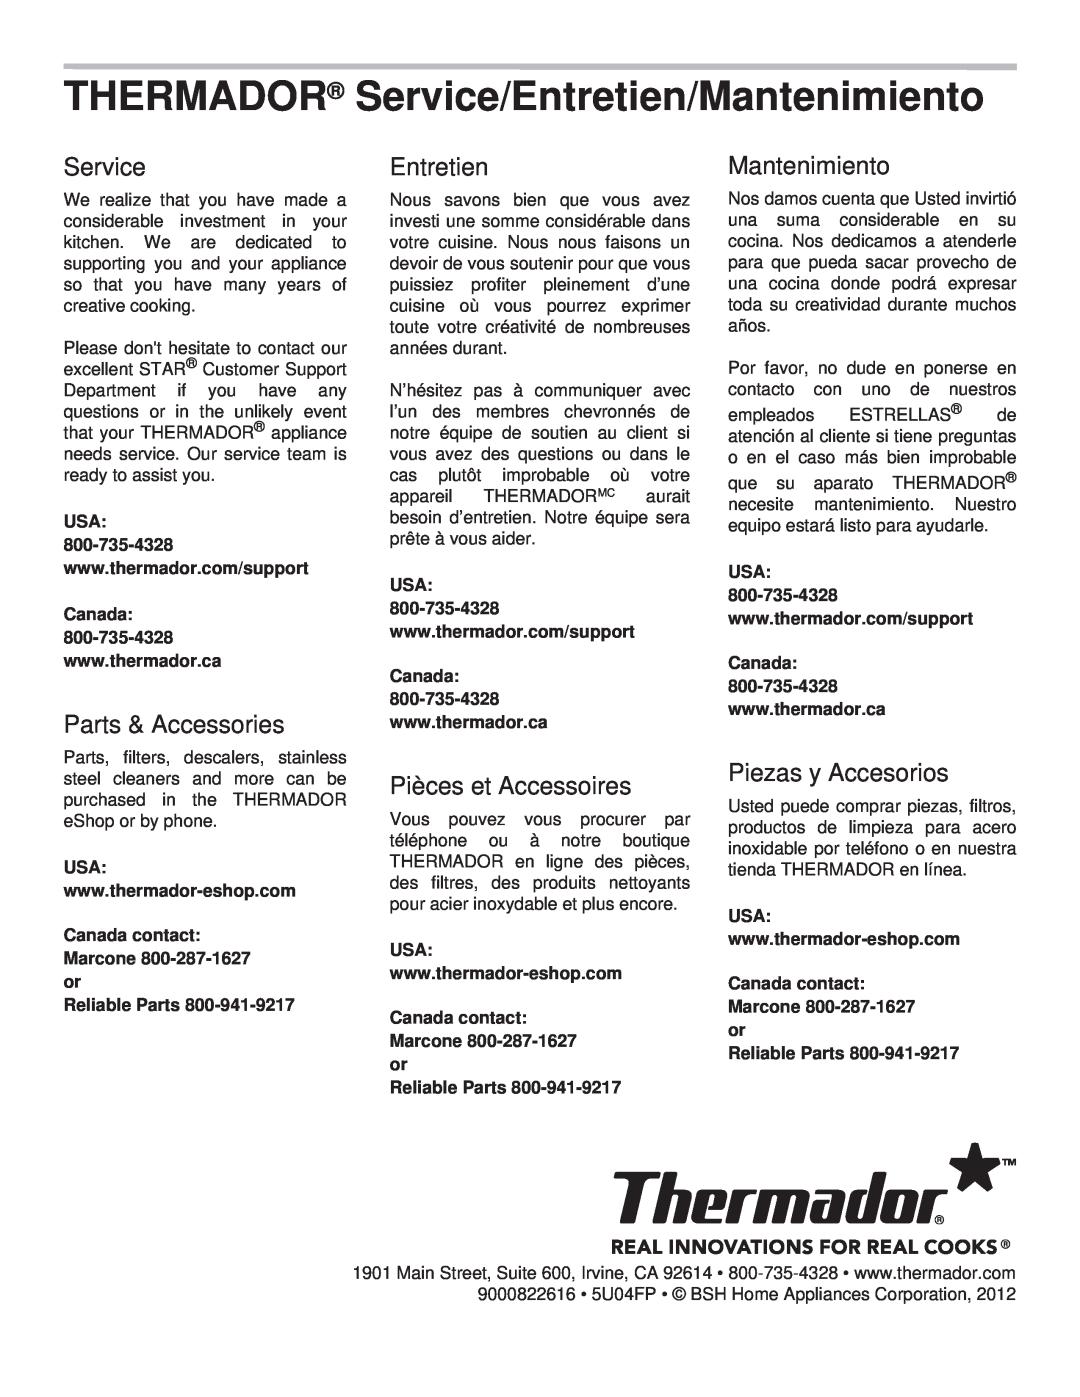 Thermador PCG30 THERMADOR Service/Entretien/Mantenimiento, Parts & Accessories, Pièces et Accessoires, Piezas y Accesorios 